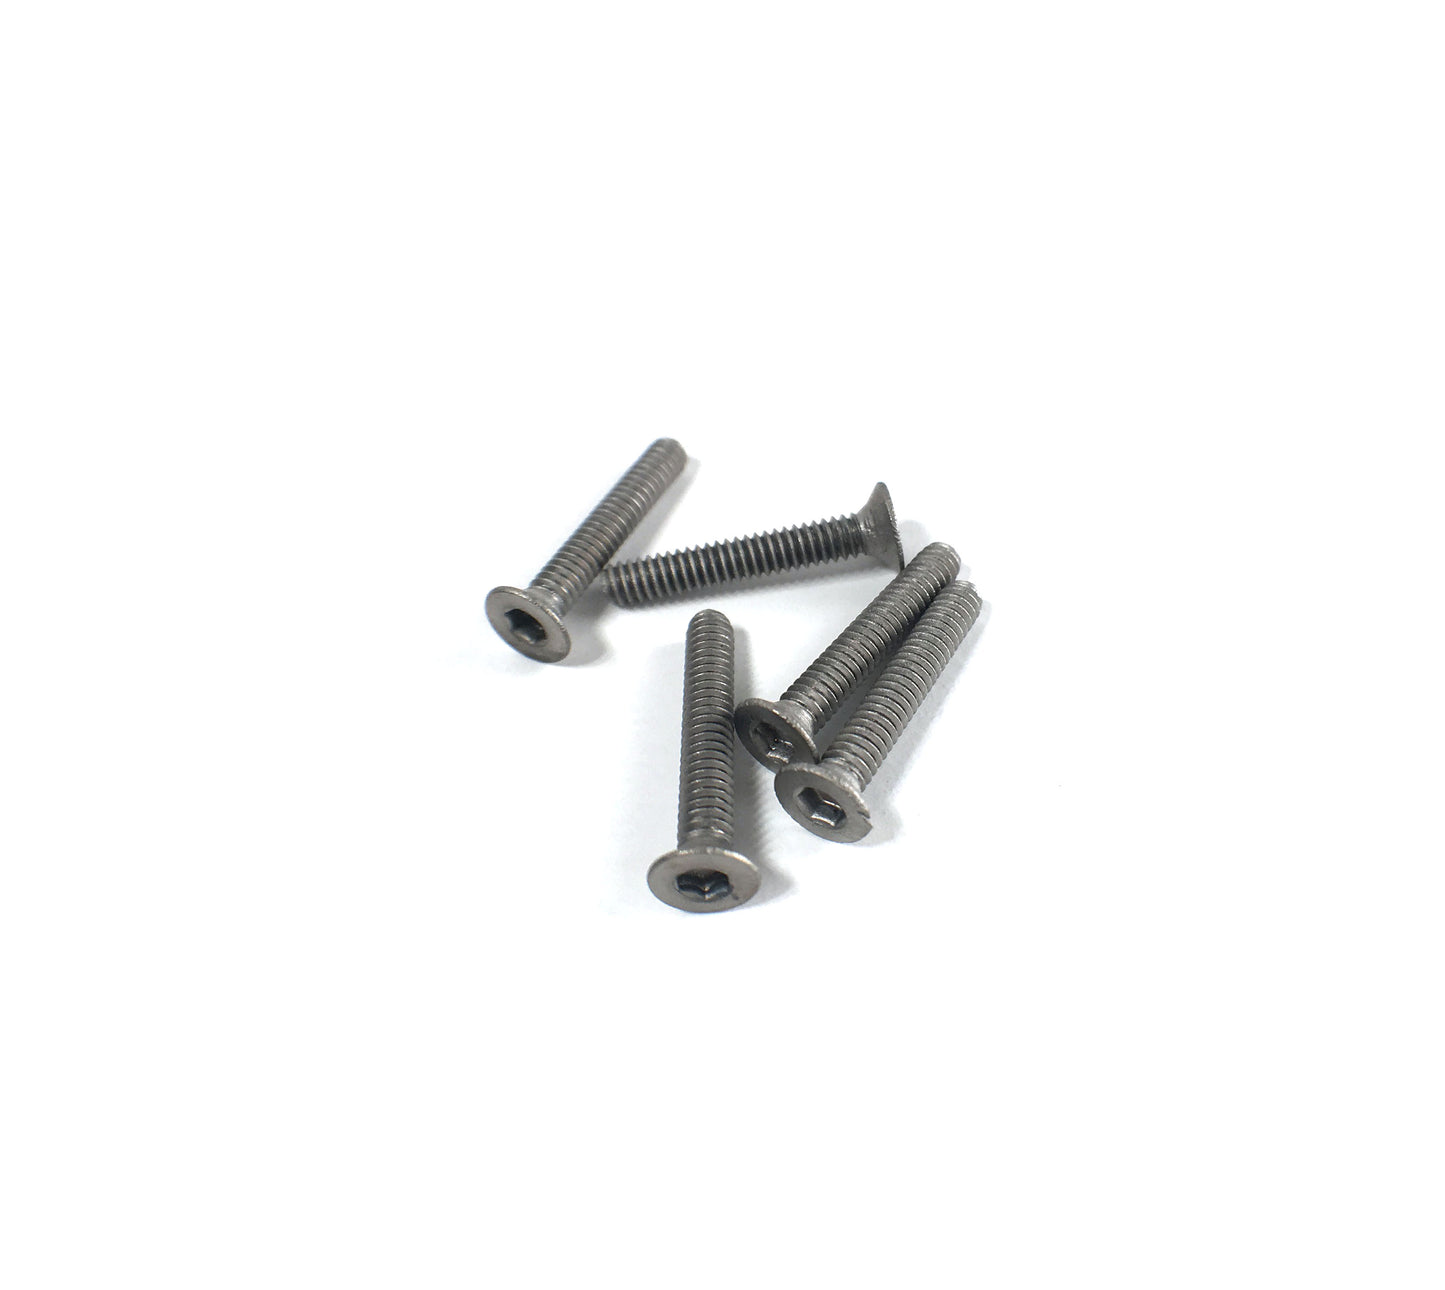 Titanium 2 x 10mm Machine Countersunk Head Screw (5 pcs)